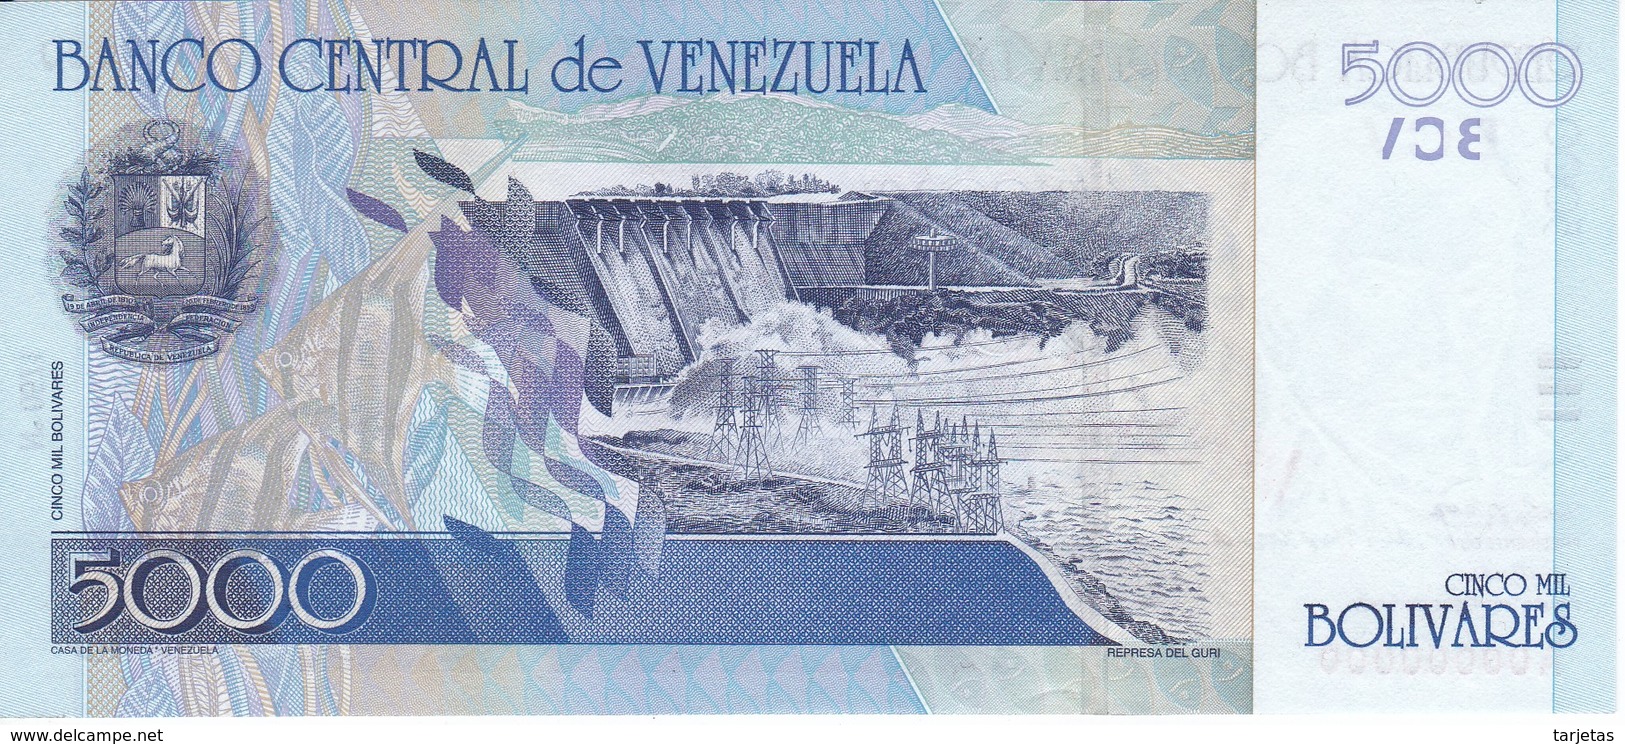 ESPECIMEN - BILLETE DE VENEZUELA DE 5O00 BOLIVARES DEL AÑO 2000 SIN CIRCULAR-UNCIRCULATED (SPECIMEN) (BANKNOTE) MUY RARO - Venezuela